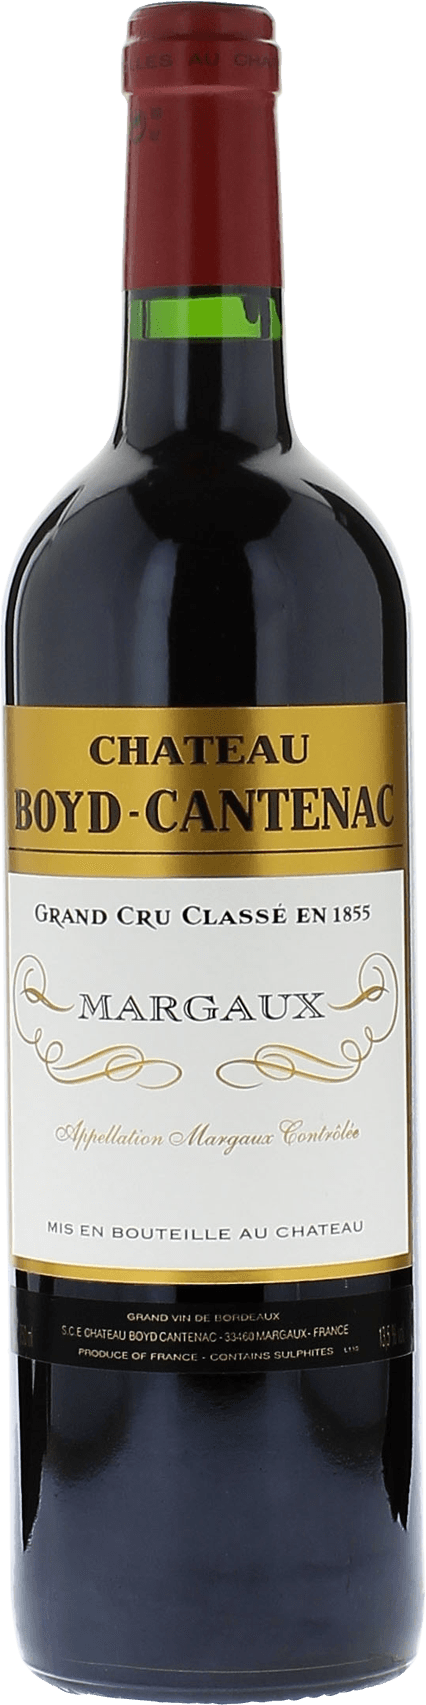 Boyd cantenac 2010 2me Grand cru class Margaux, Bordeaux rouge